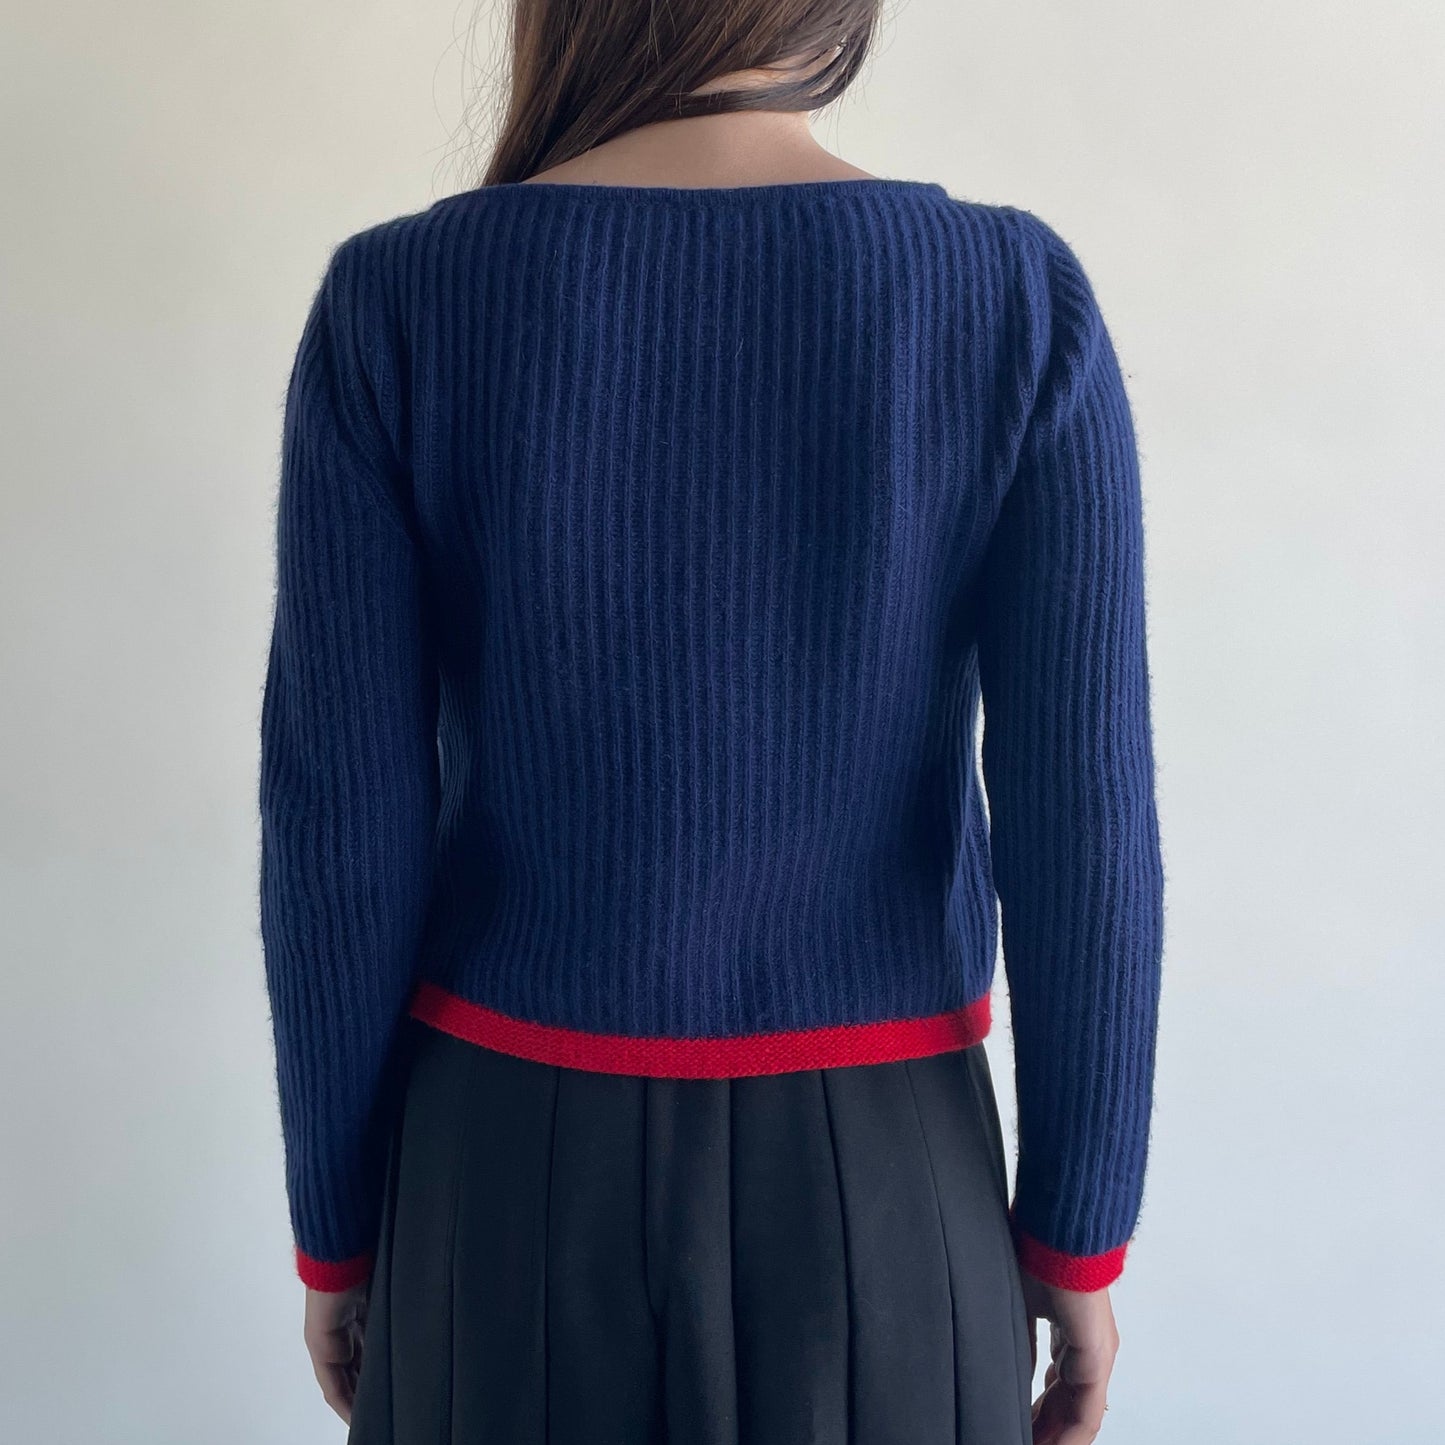 blumarine sweater